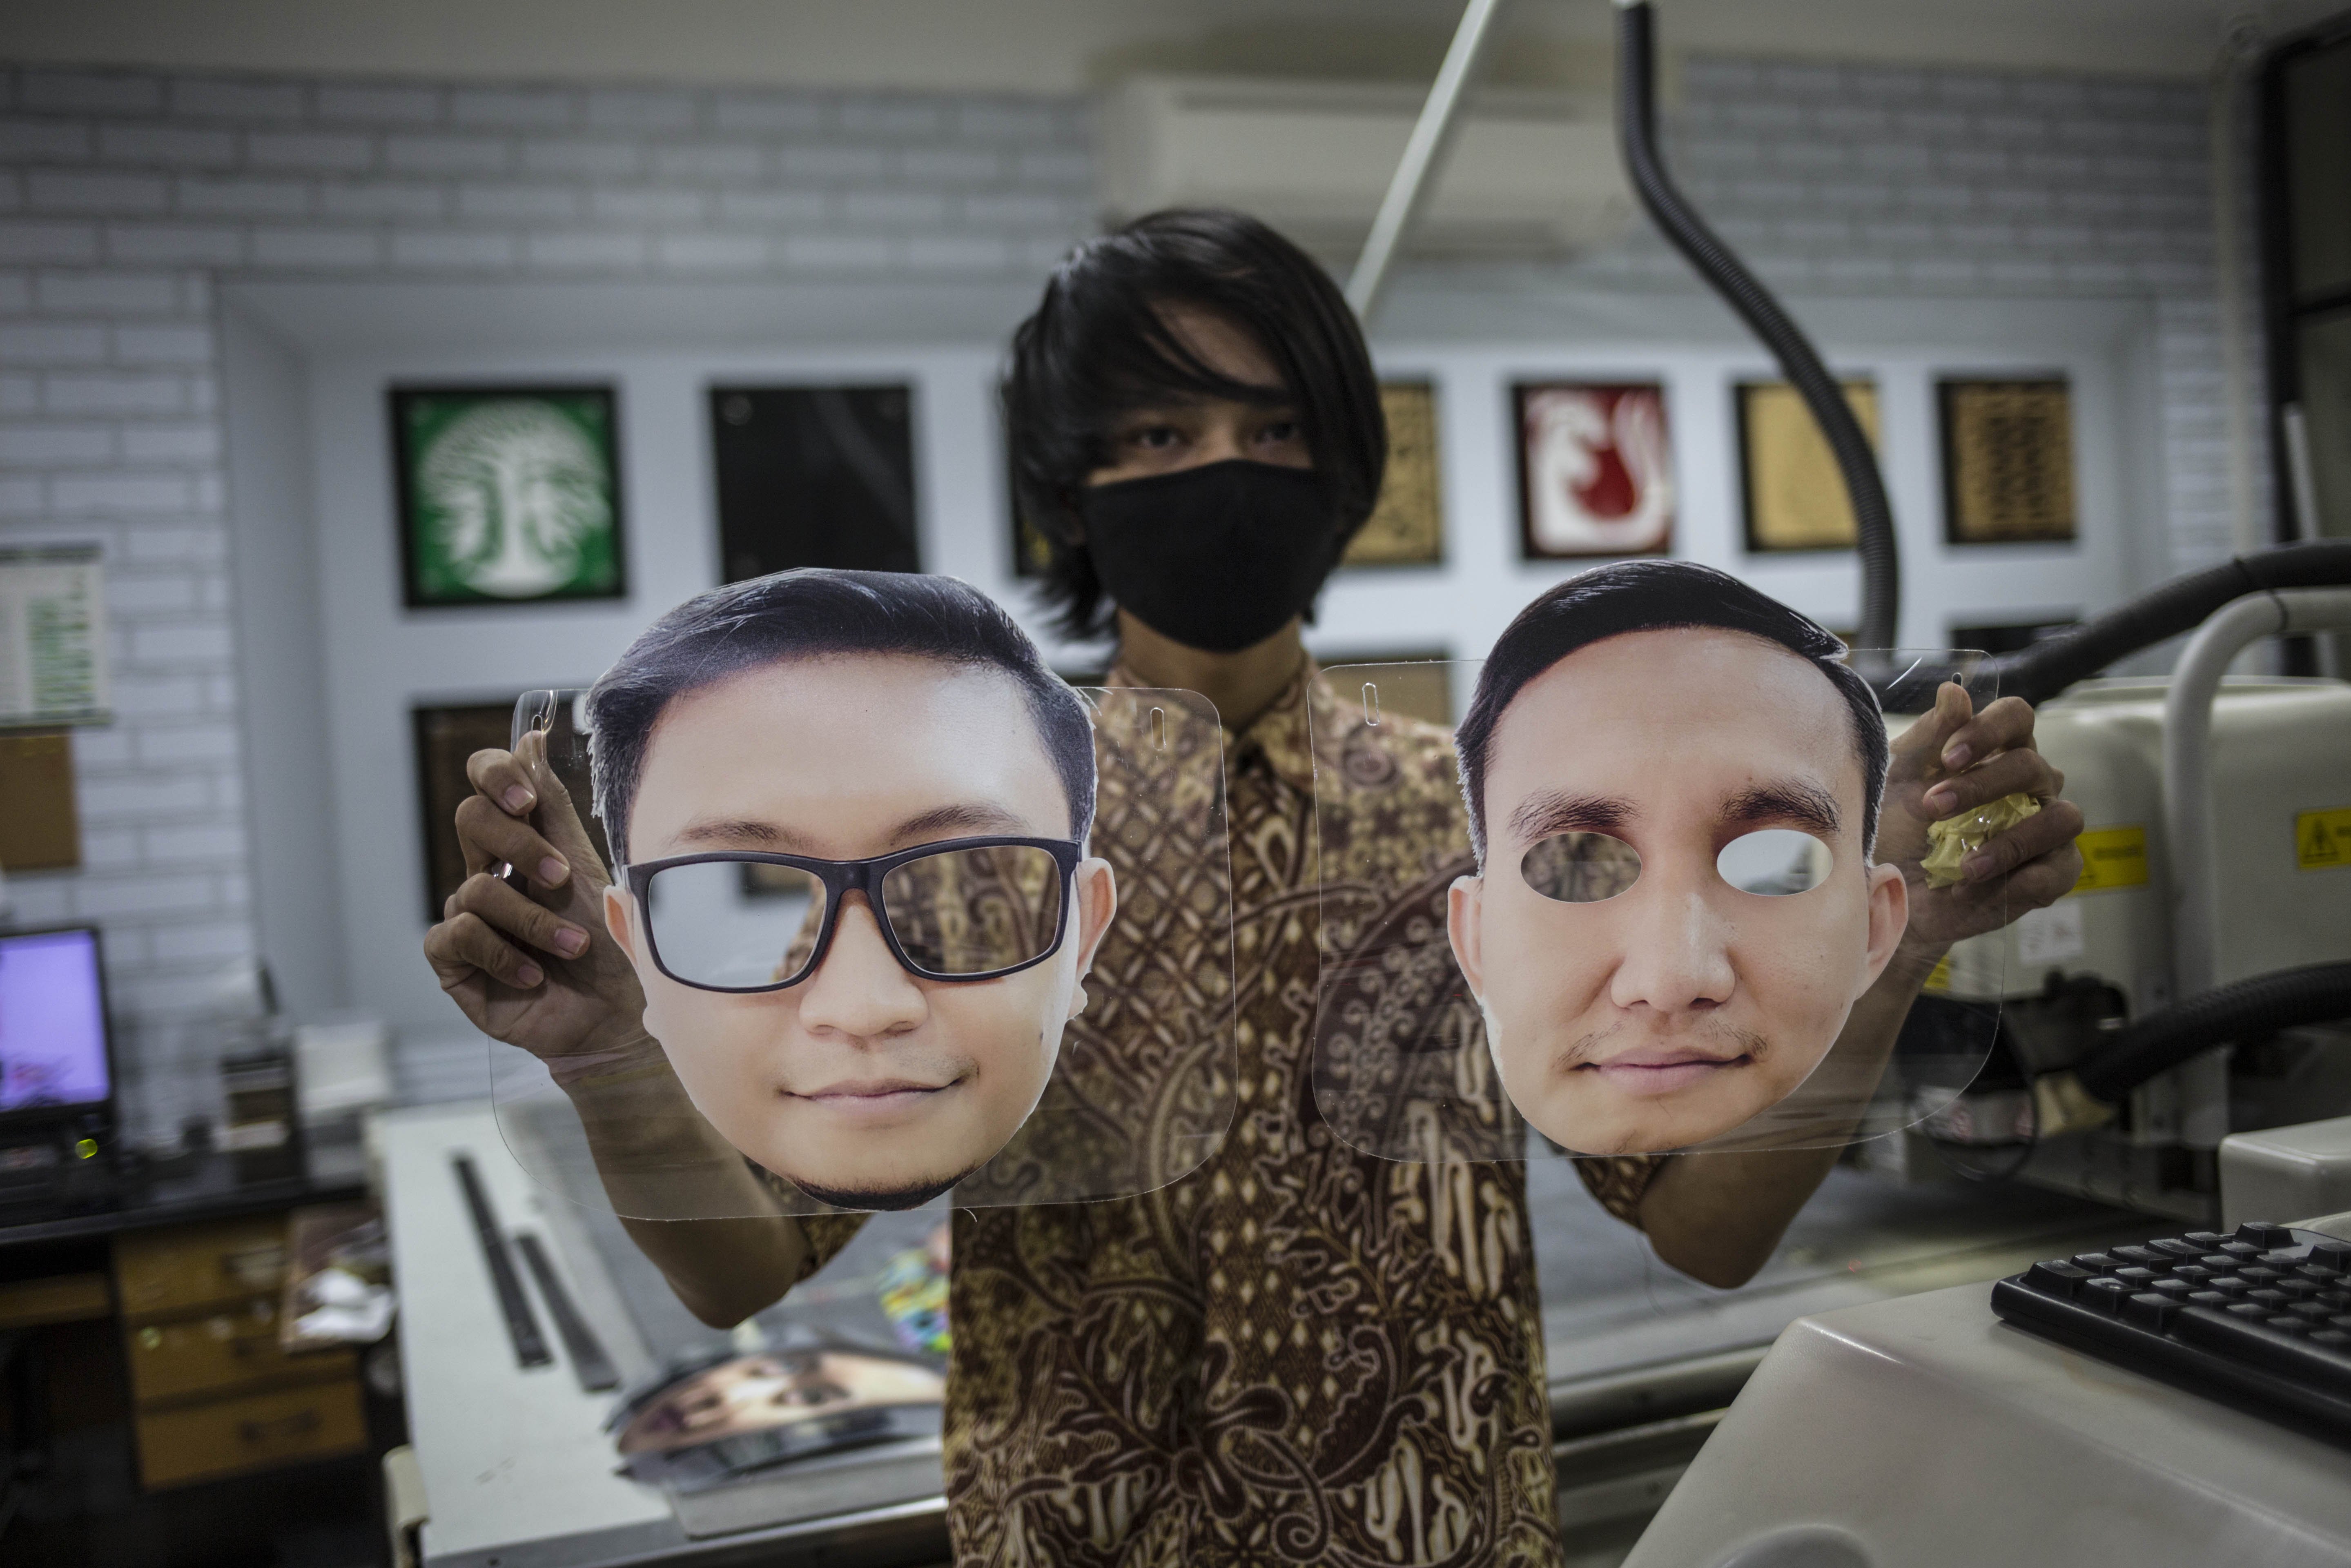 Pekerja menujukan pelindung wajah berkarakter di percetakan Bintang Sempurna, Bendungan Hilir, Jakarta Pusat, Jumat (20/6/2020).